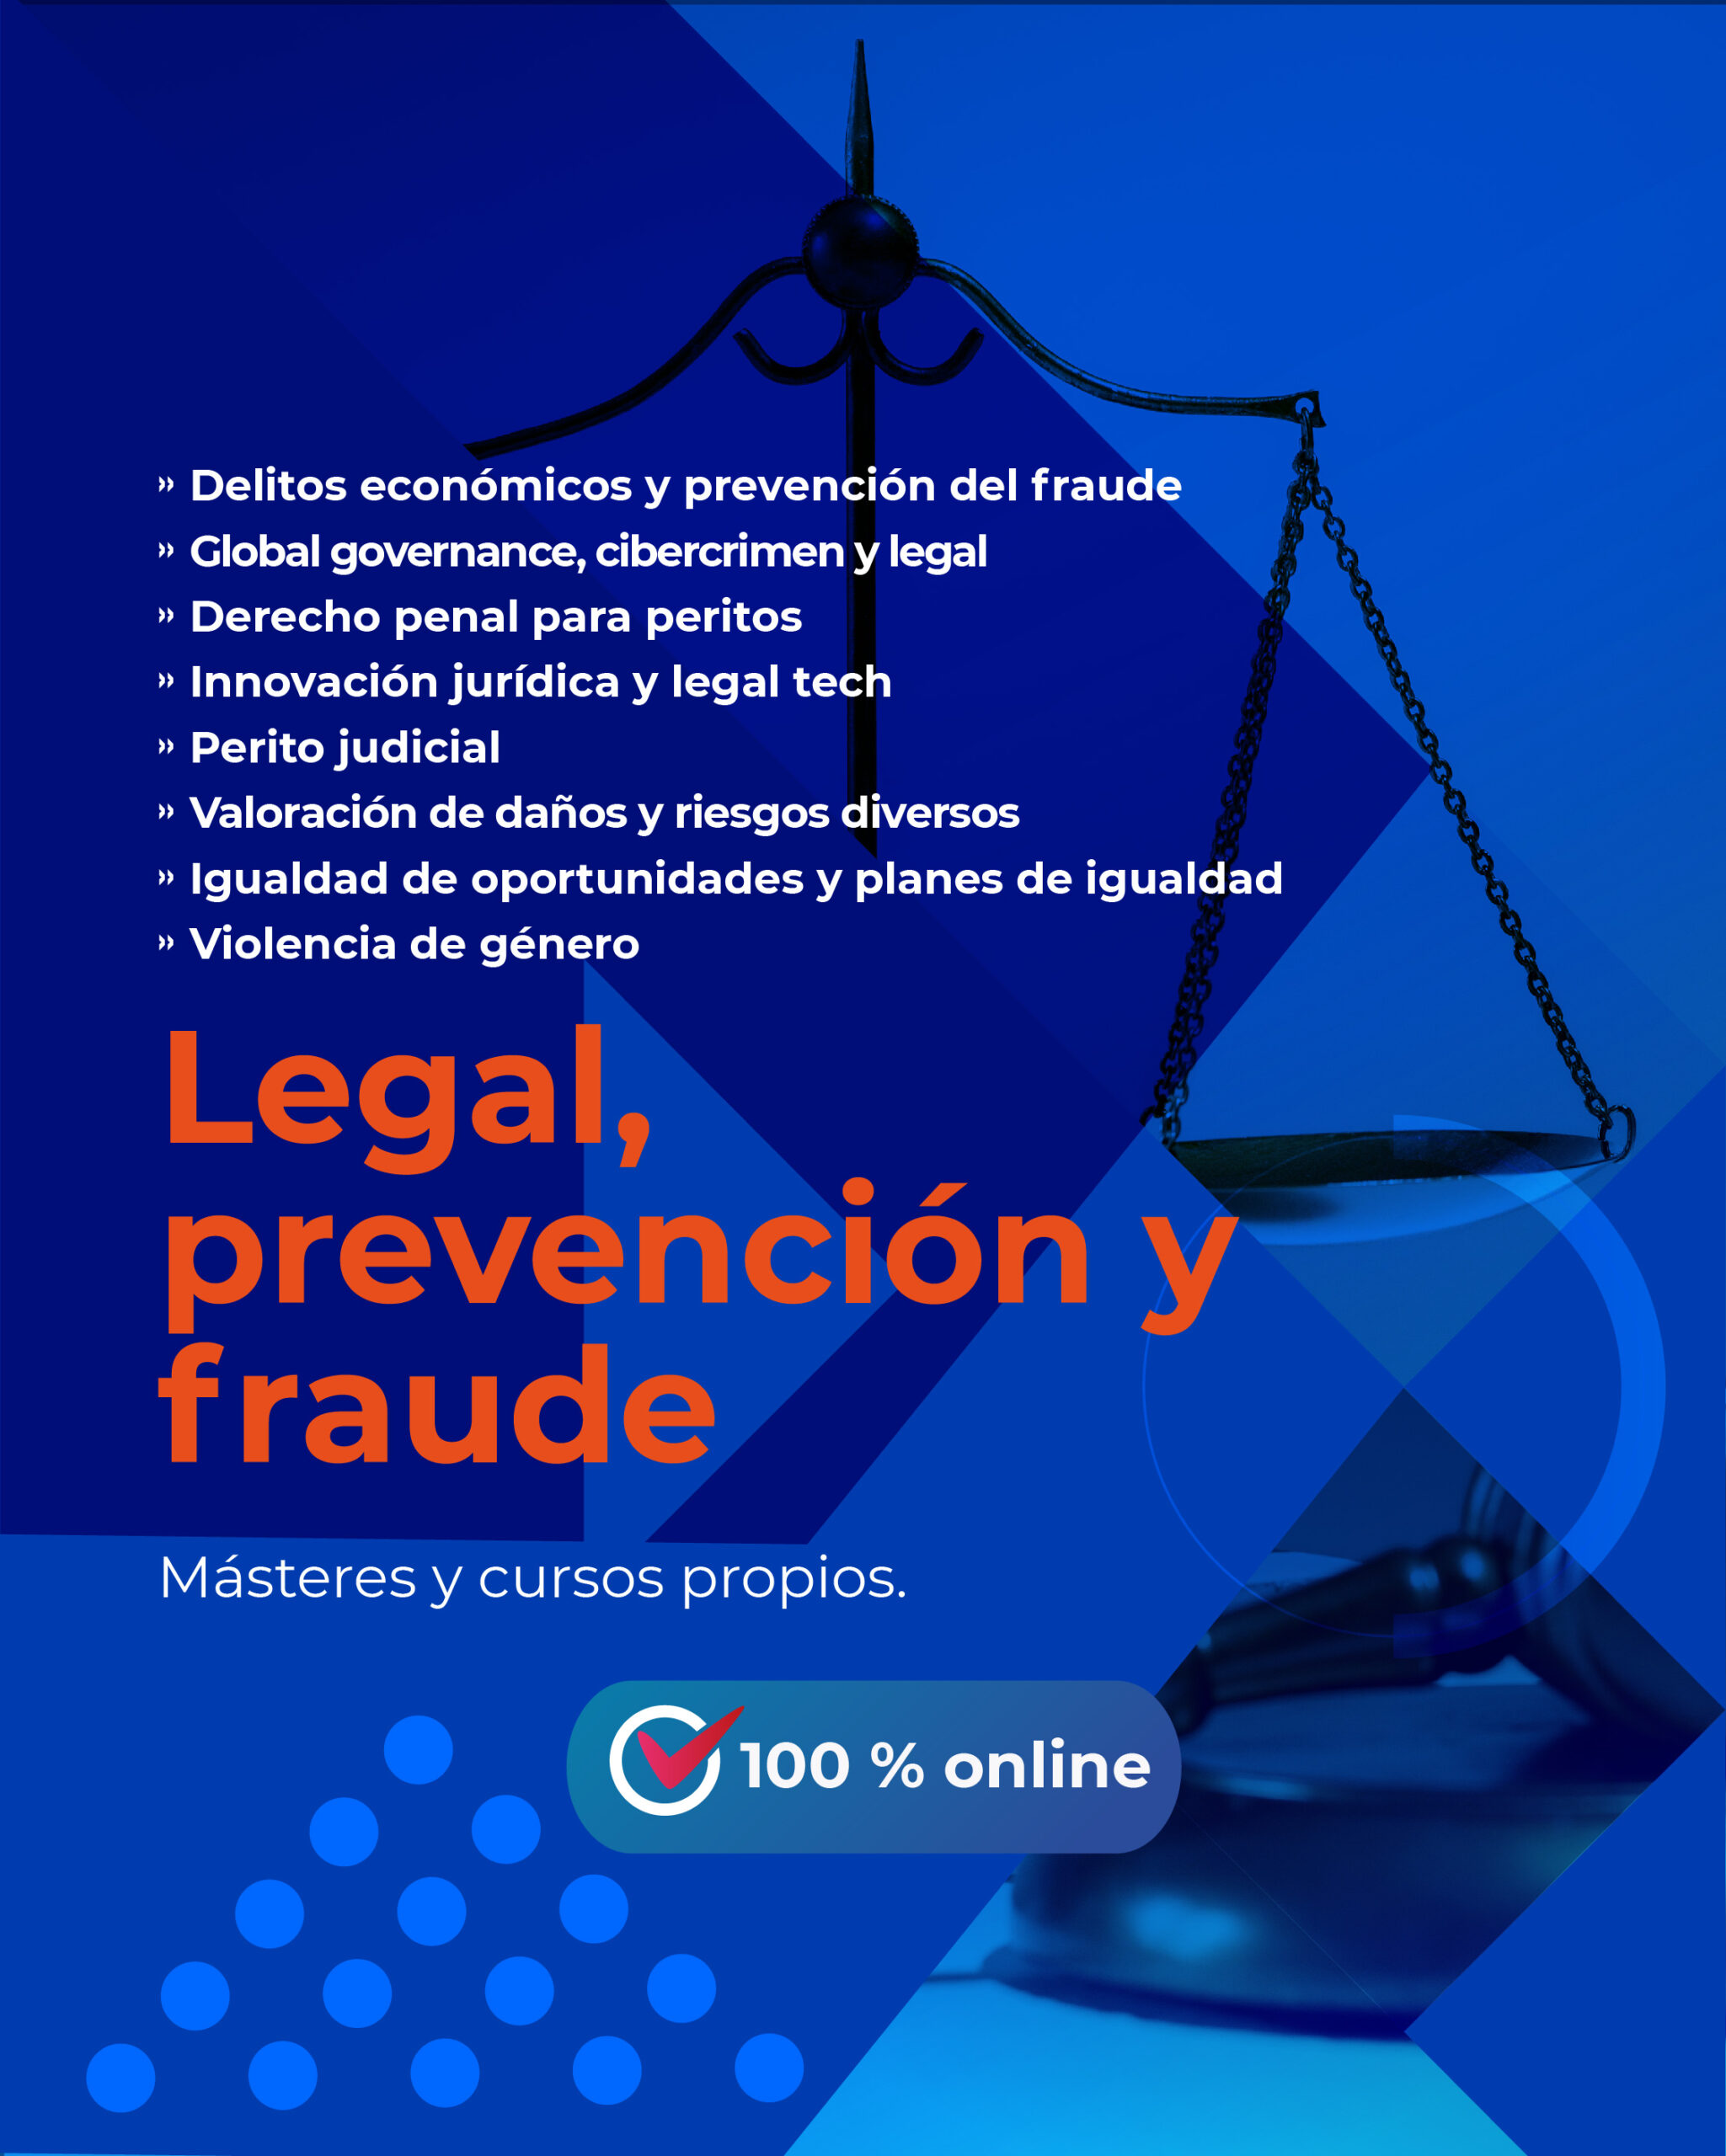 Legal prevencion y fraude_EICYC